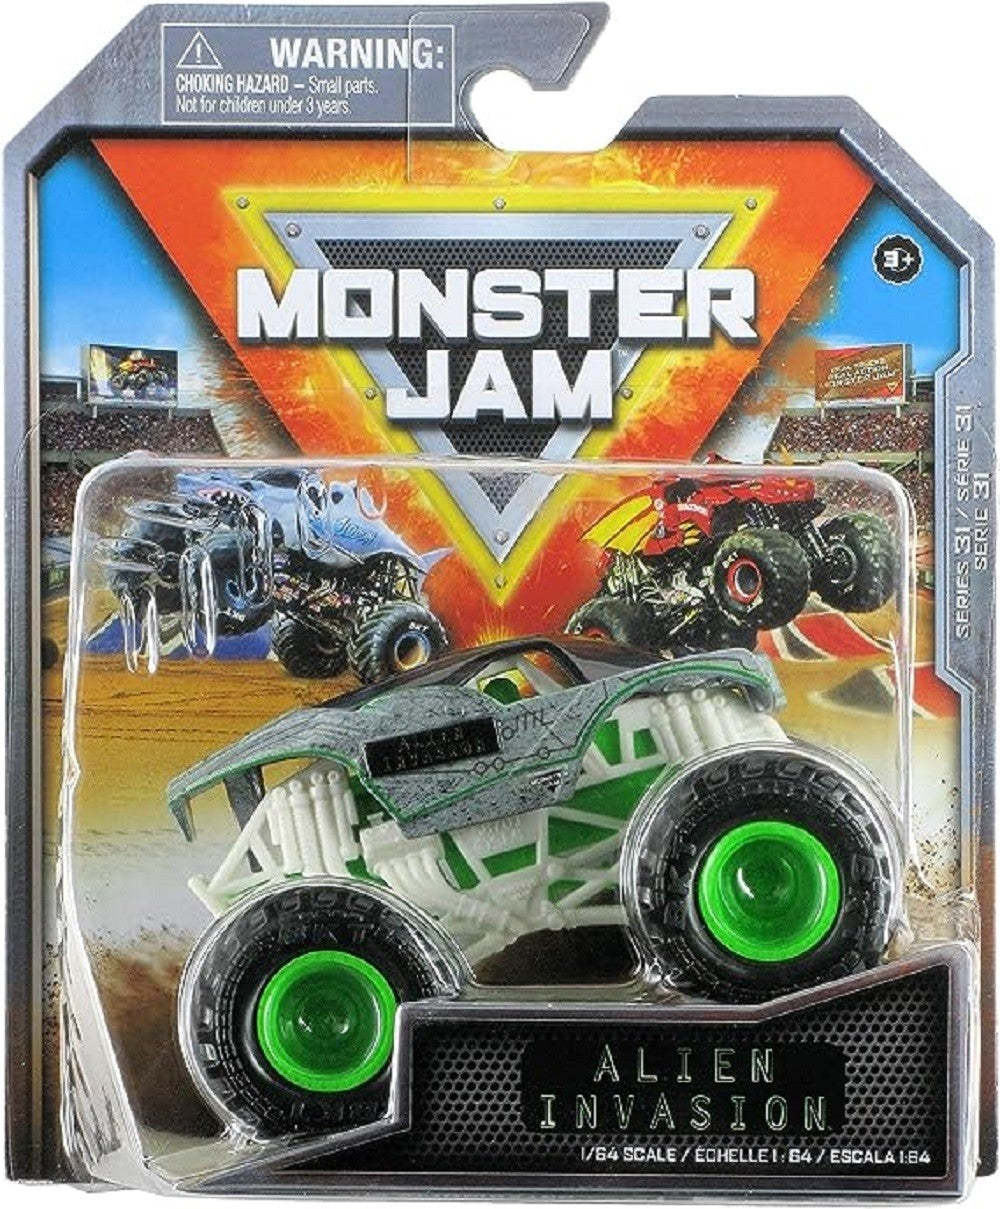 Hot Wheels Monster Trucks, Set Of 12 1:64 Die-Cast Toy Trucks For Kids